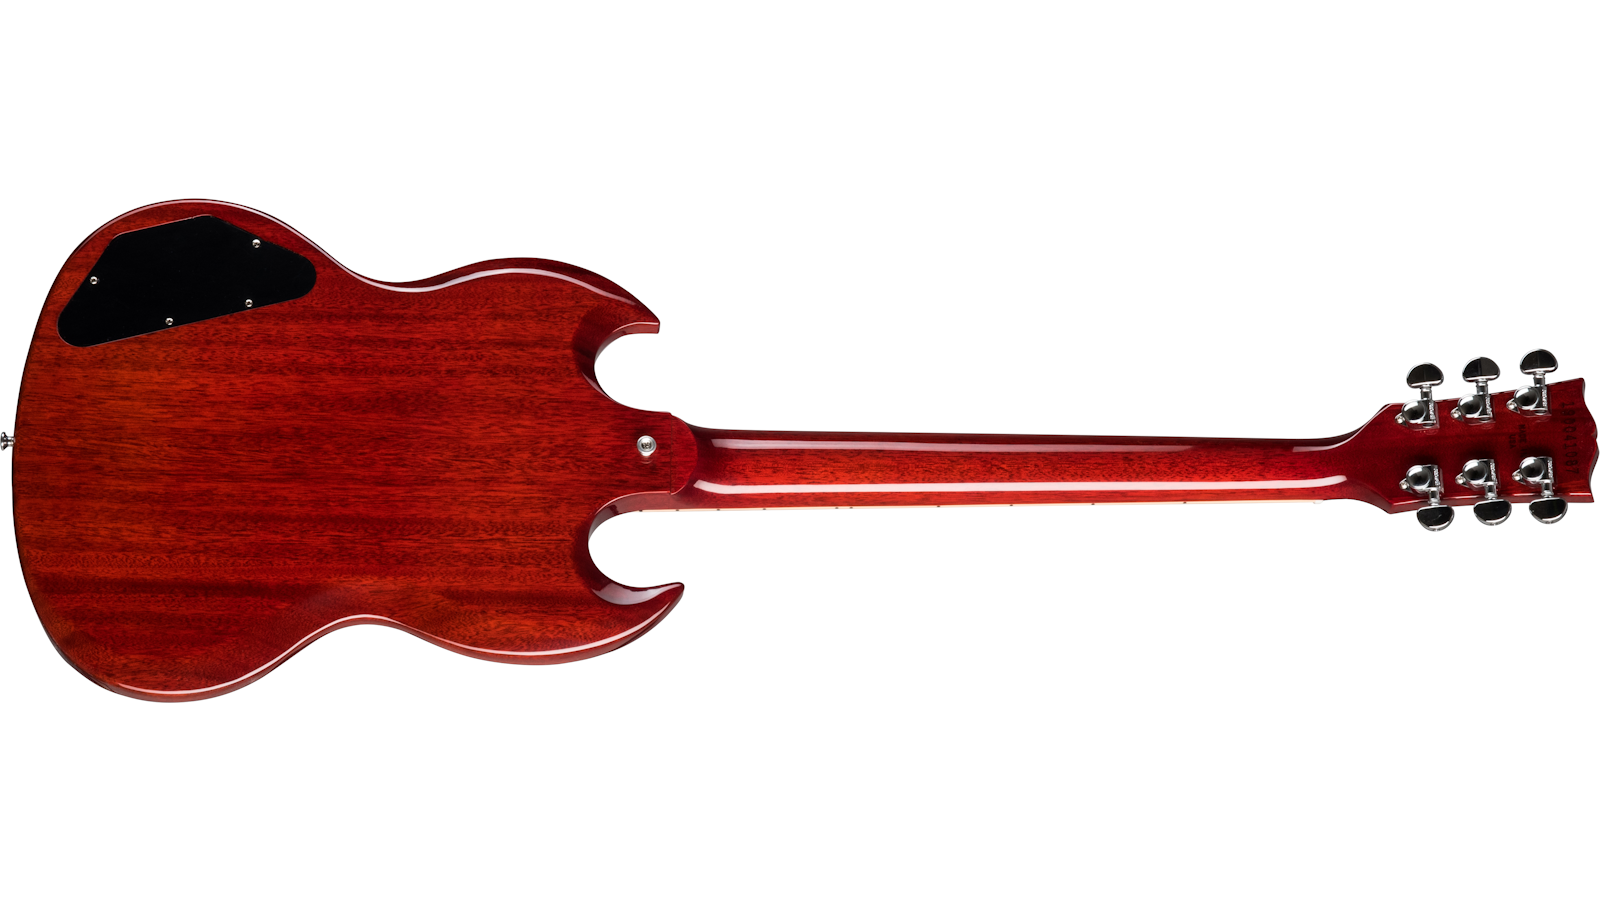 Gibson Sg Standard Lh Gaucher 2h Ht Rw - Heritage Cherry - Linkshandige elektrische gitaar - Variation 1